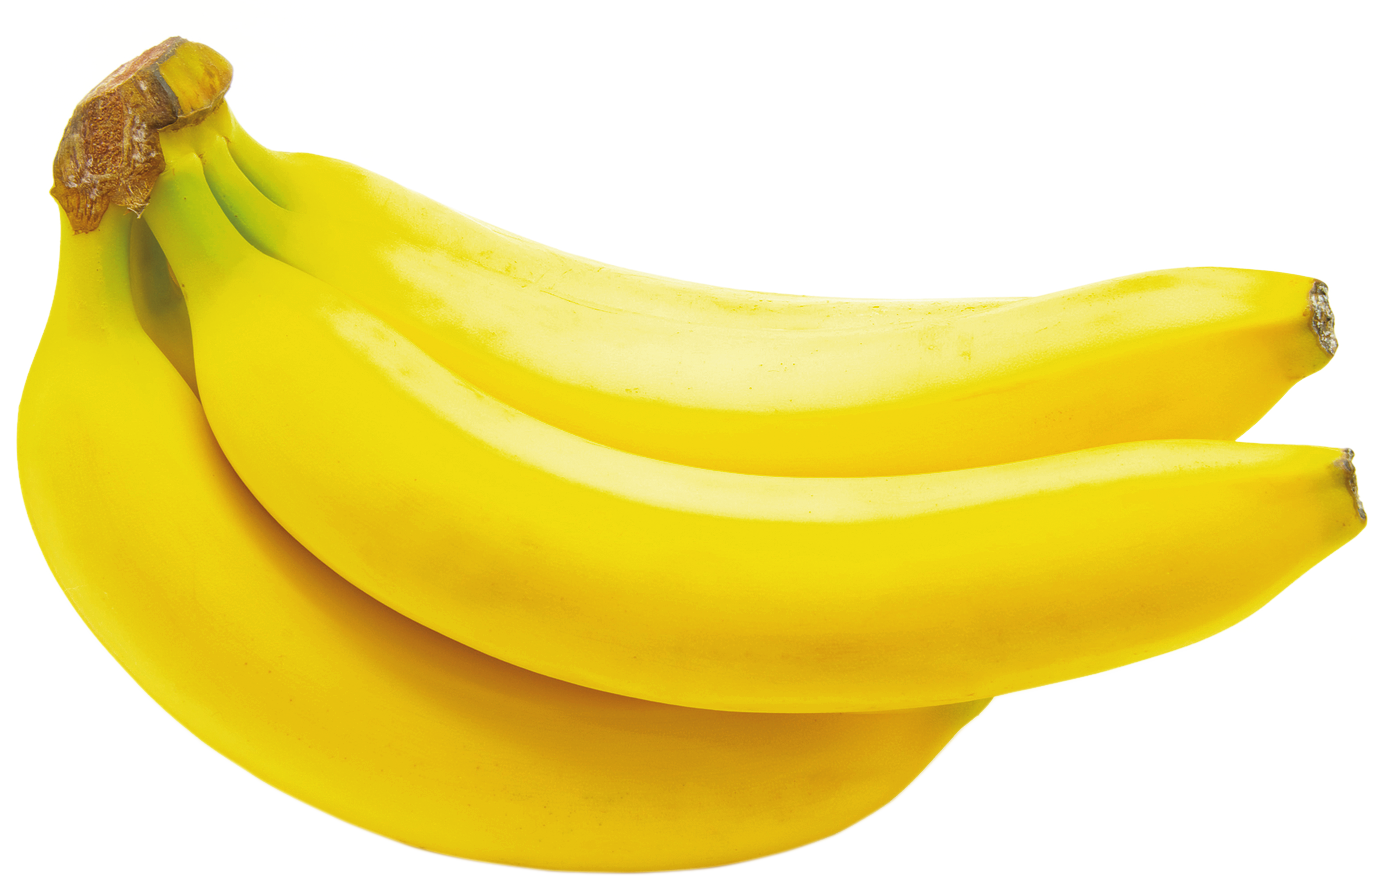 banana-png-image